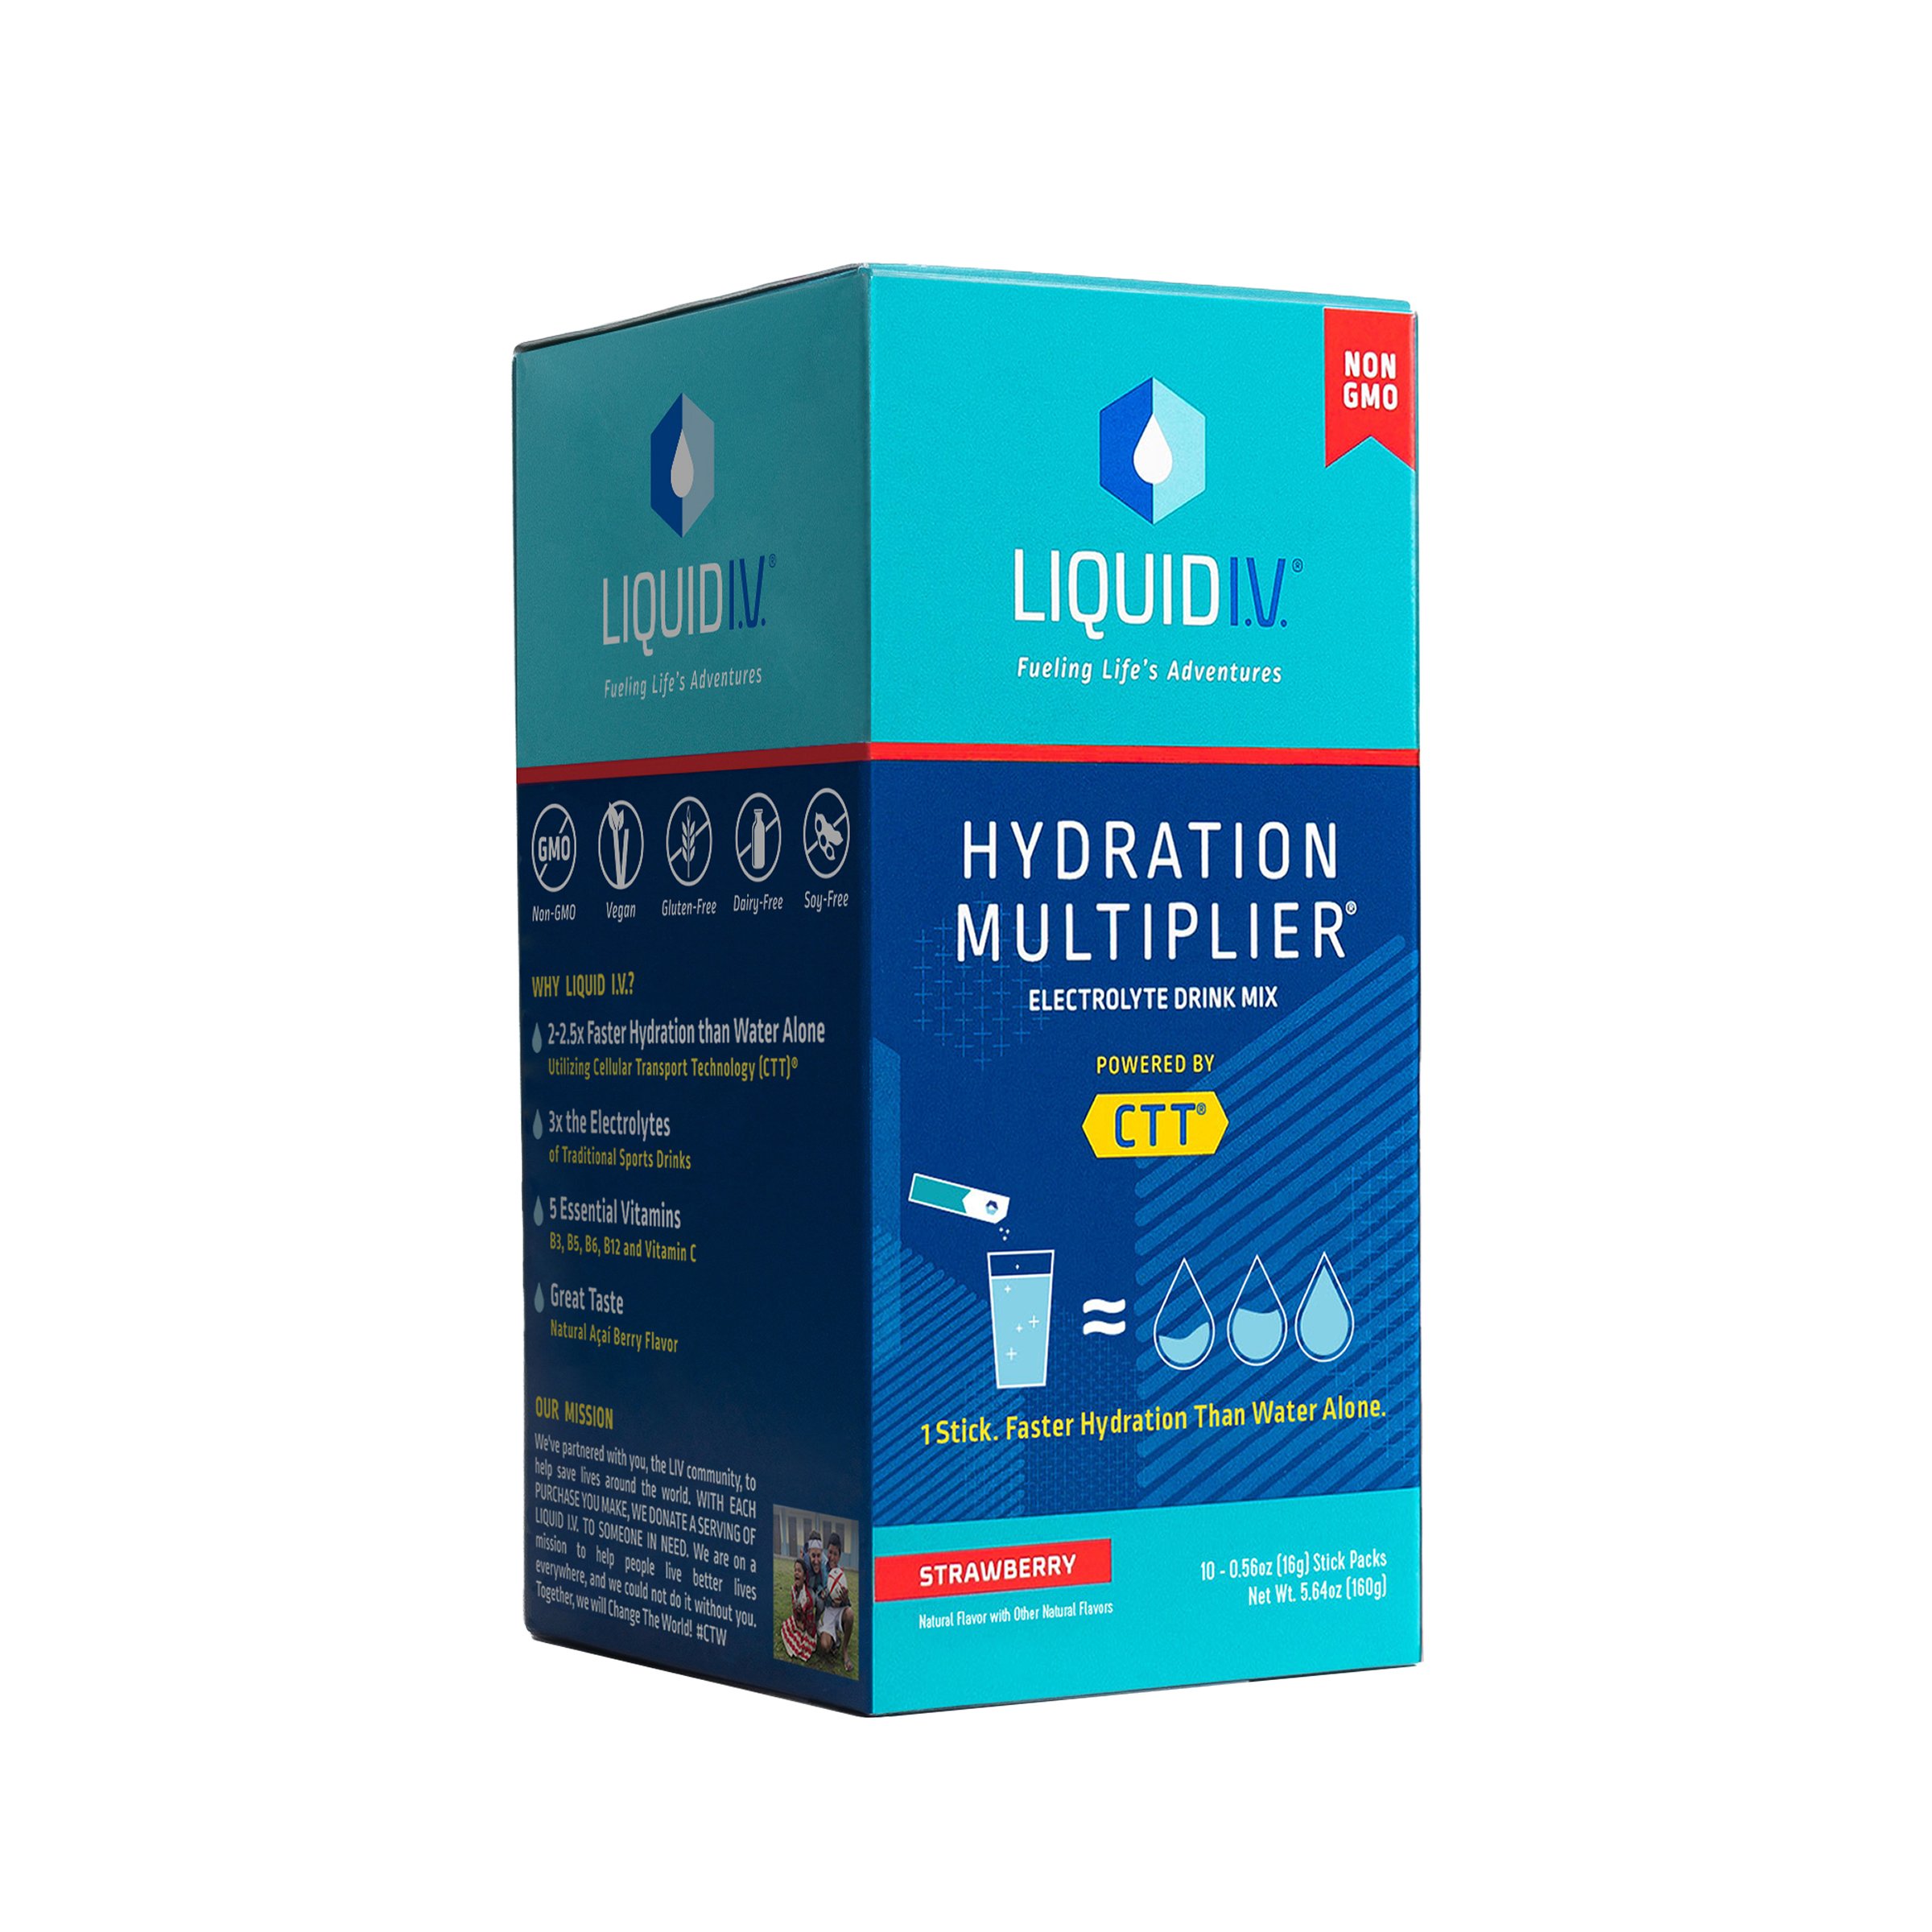  Liquid I.V. Hydration Multiplier - Strawberry Lemonade